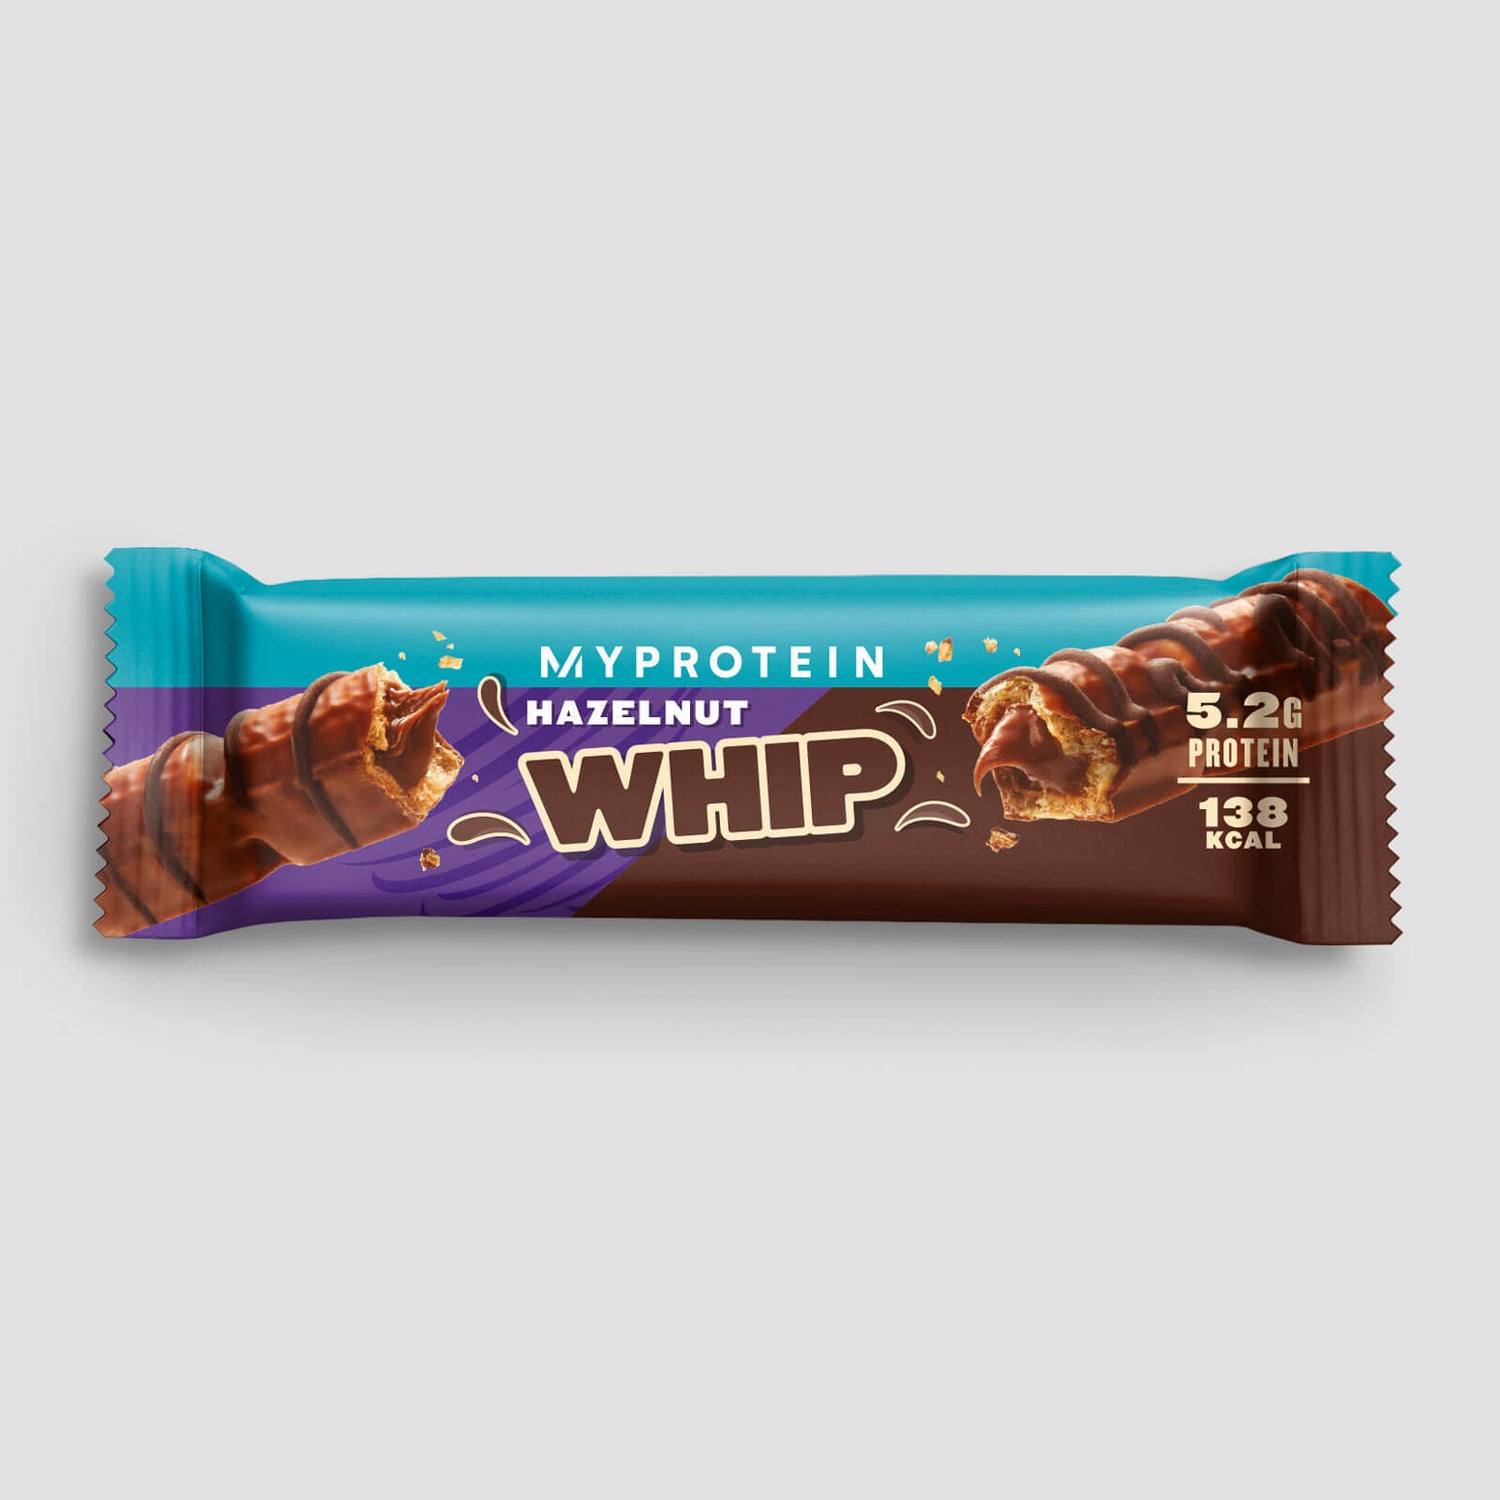 Myprotein Hazelnut Whip (Sample) - 24g - Chocolate con Leche